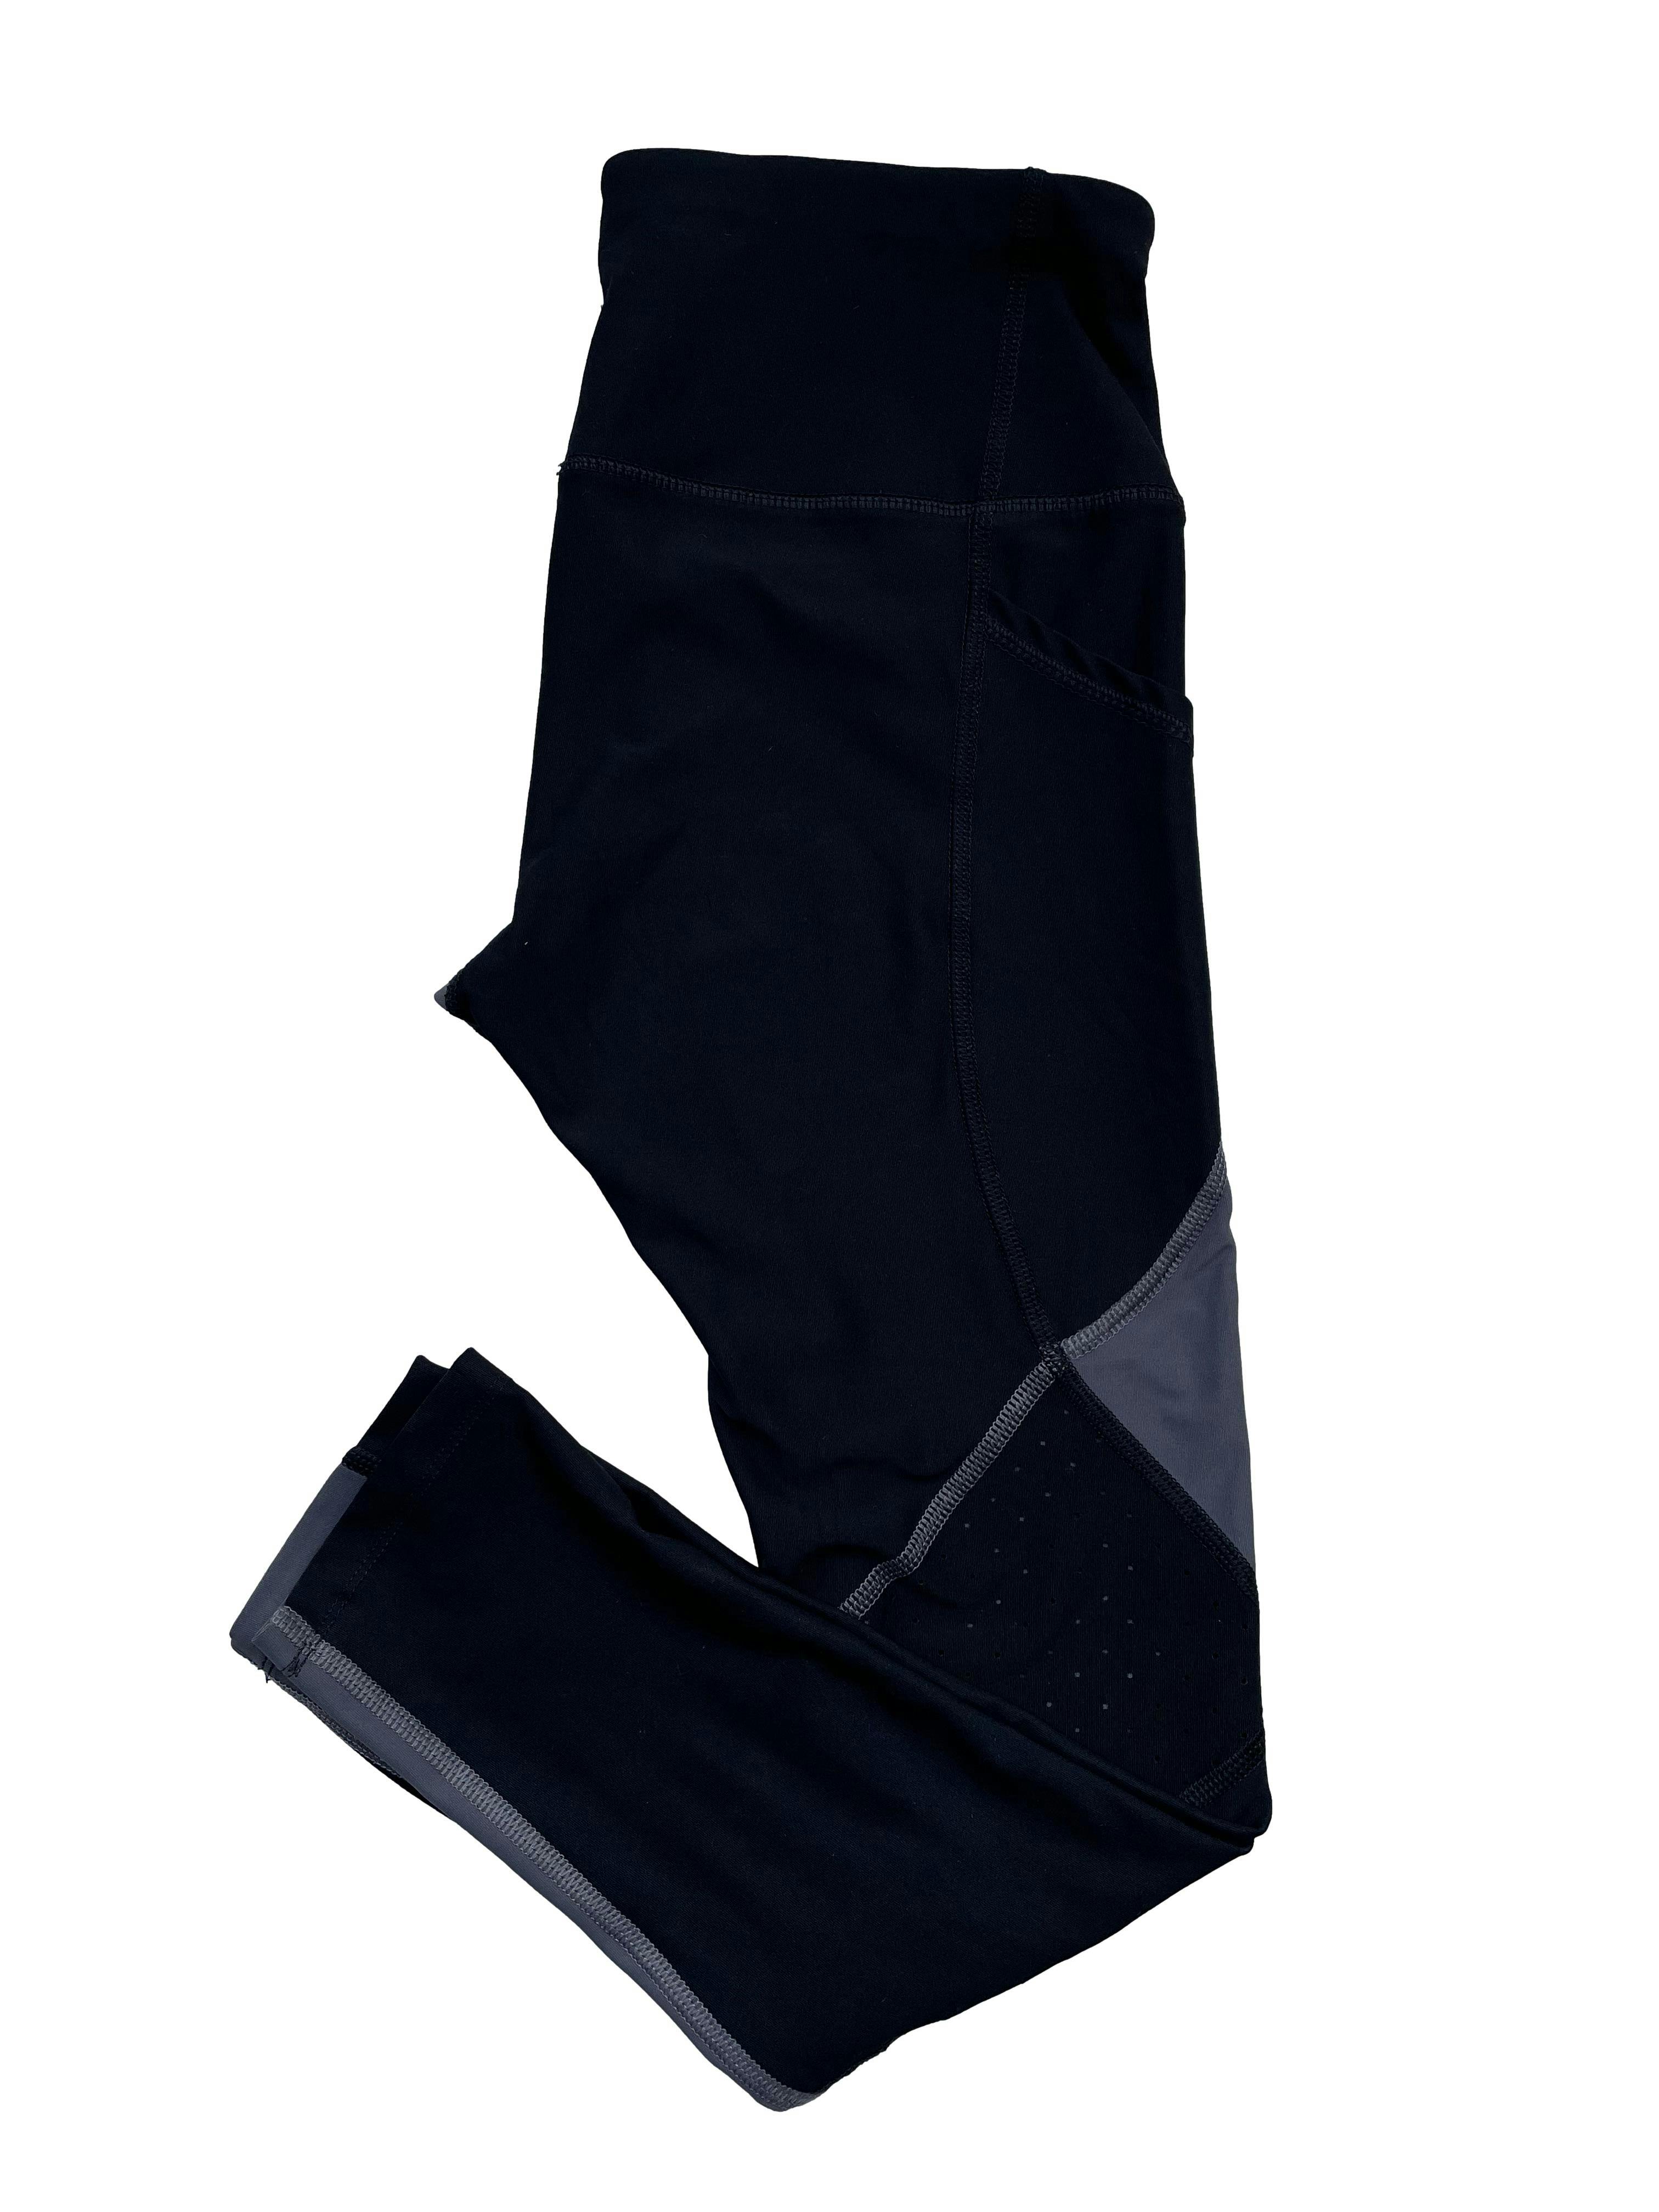 Leggings deportivas negro y gris, calado en una zona de las piernas. Cintura 70cm Tiro 24cm Largo 82cm